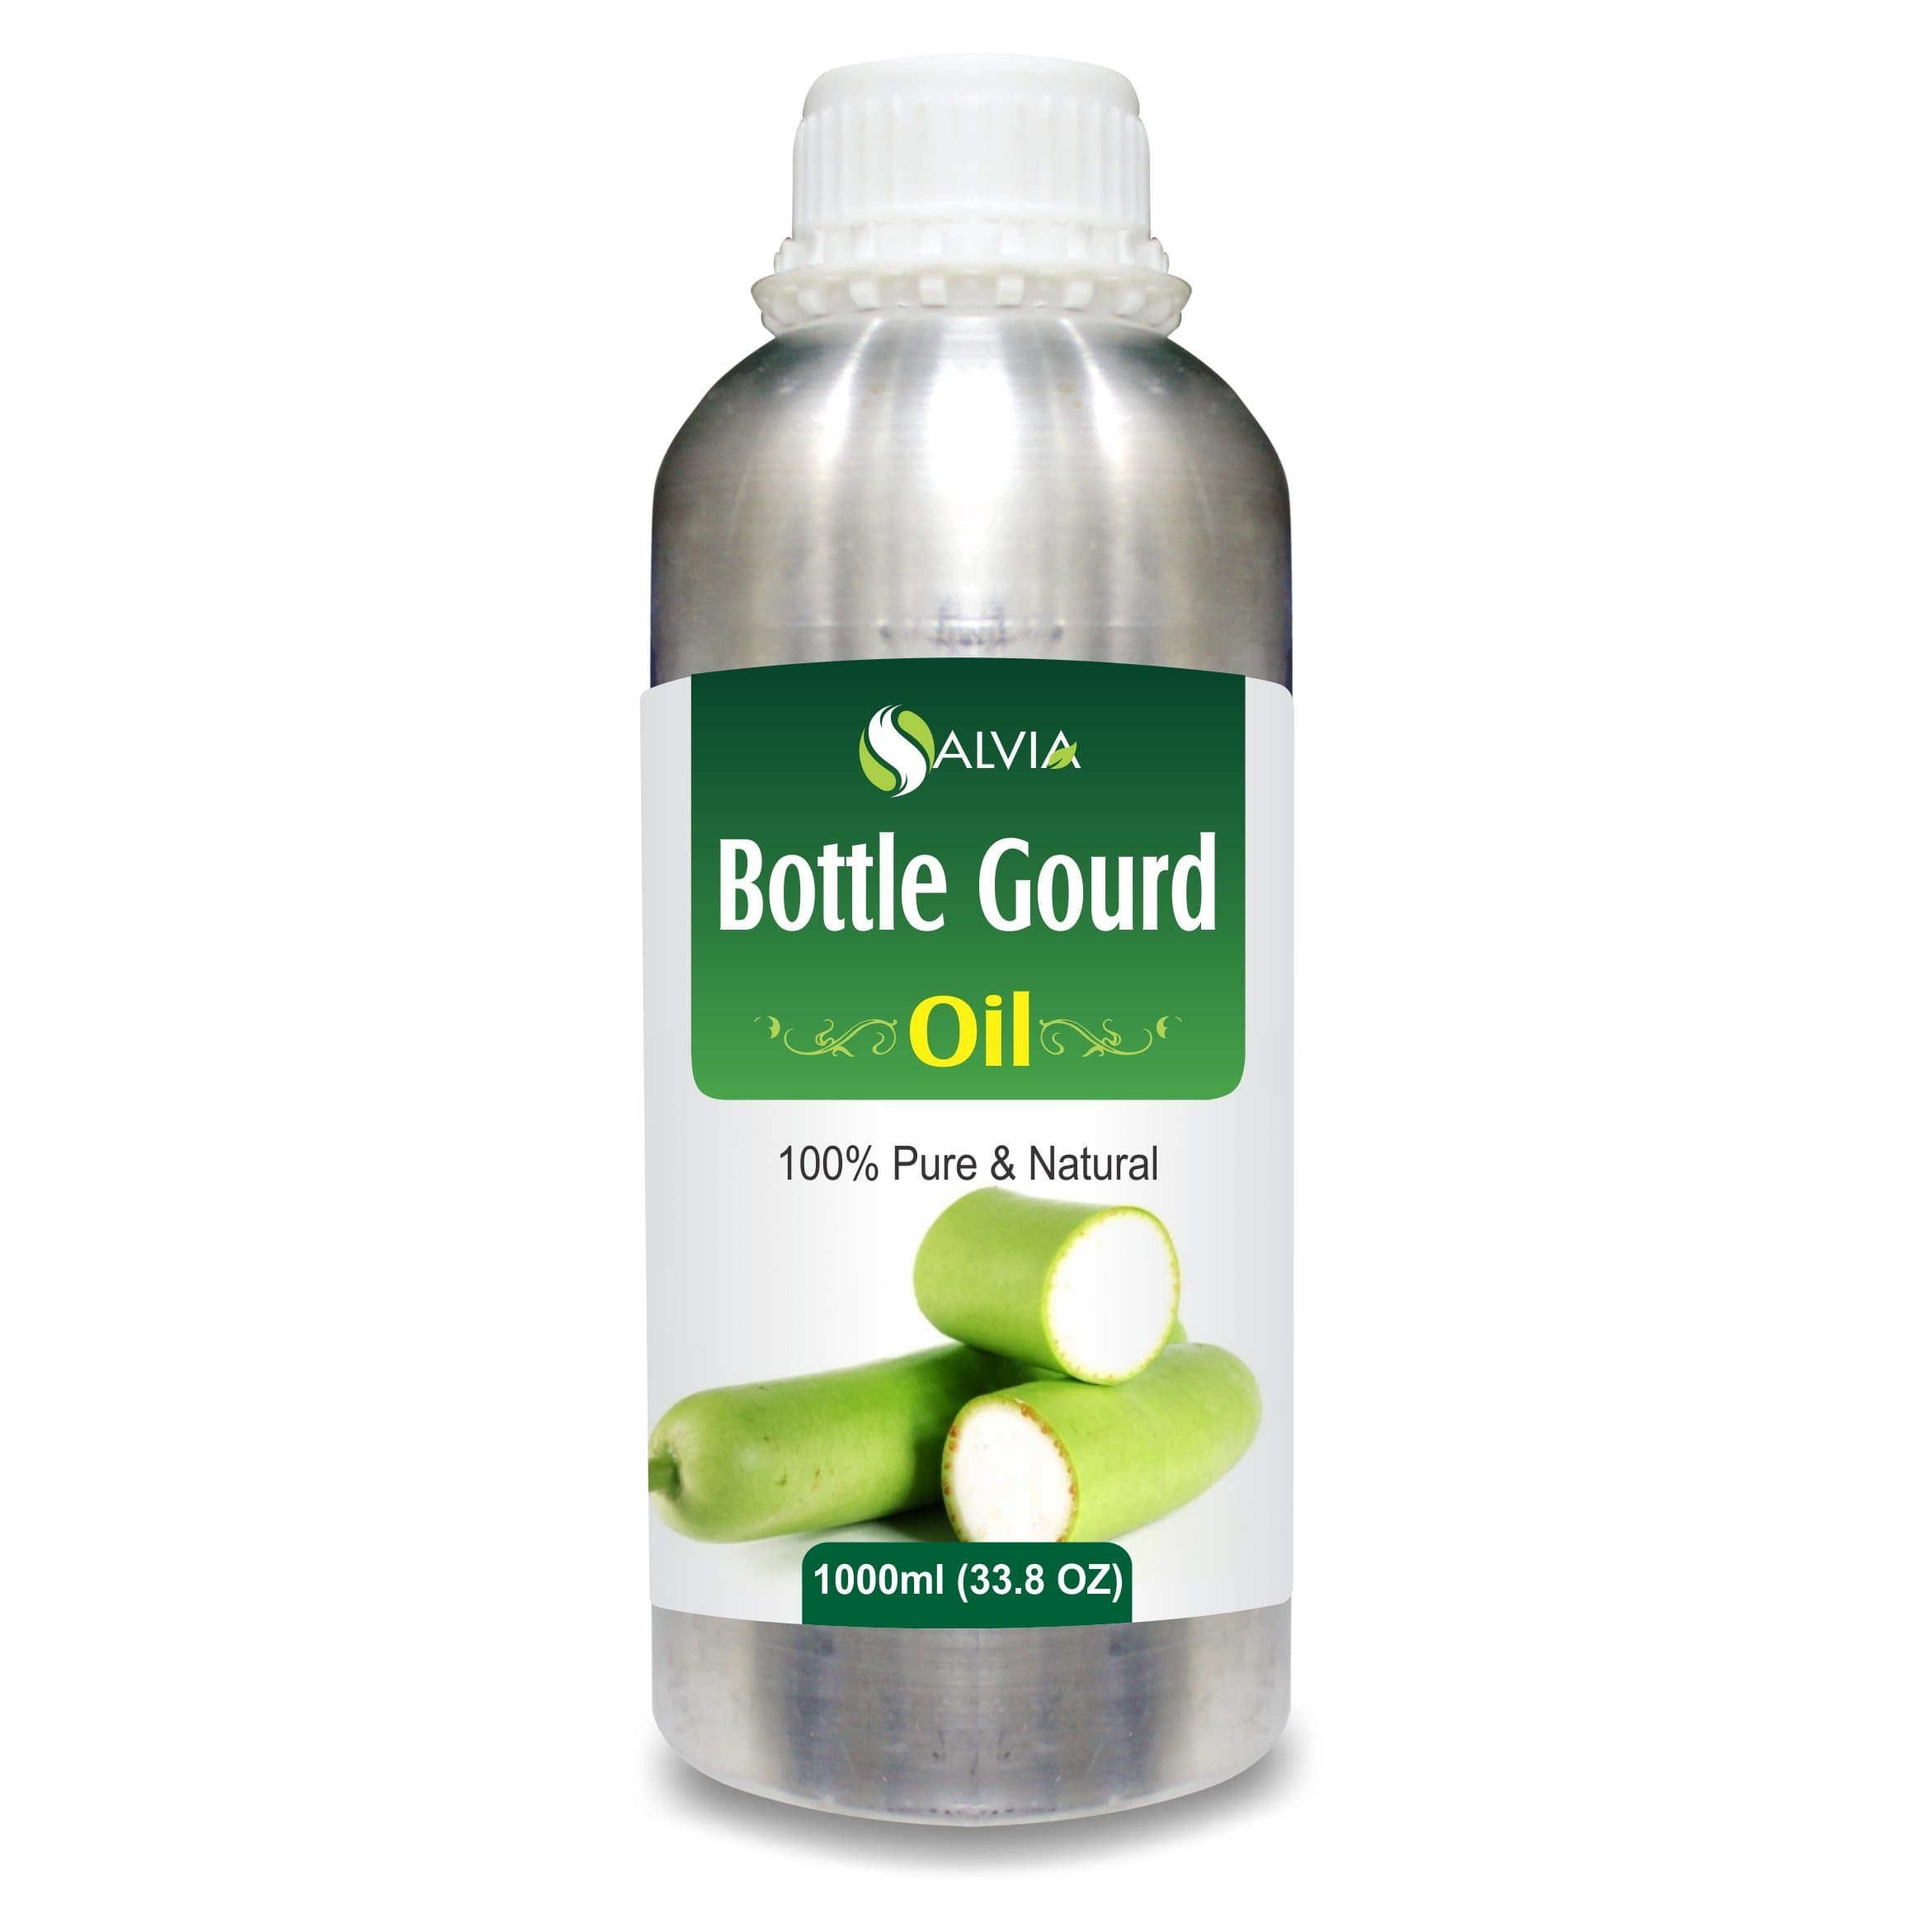 bottle gourd oil for hair